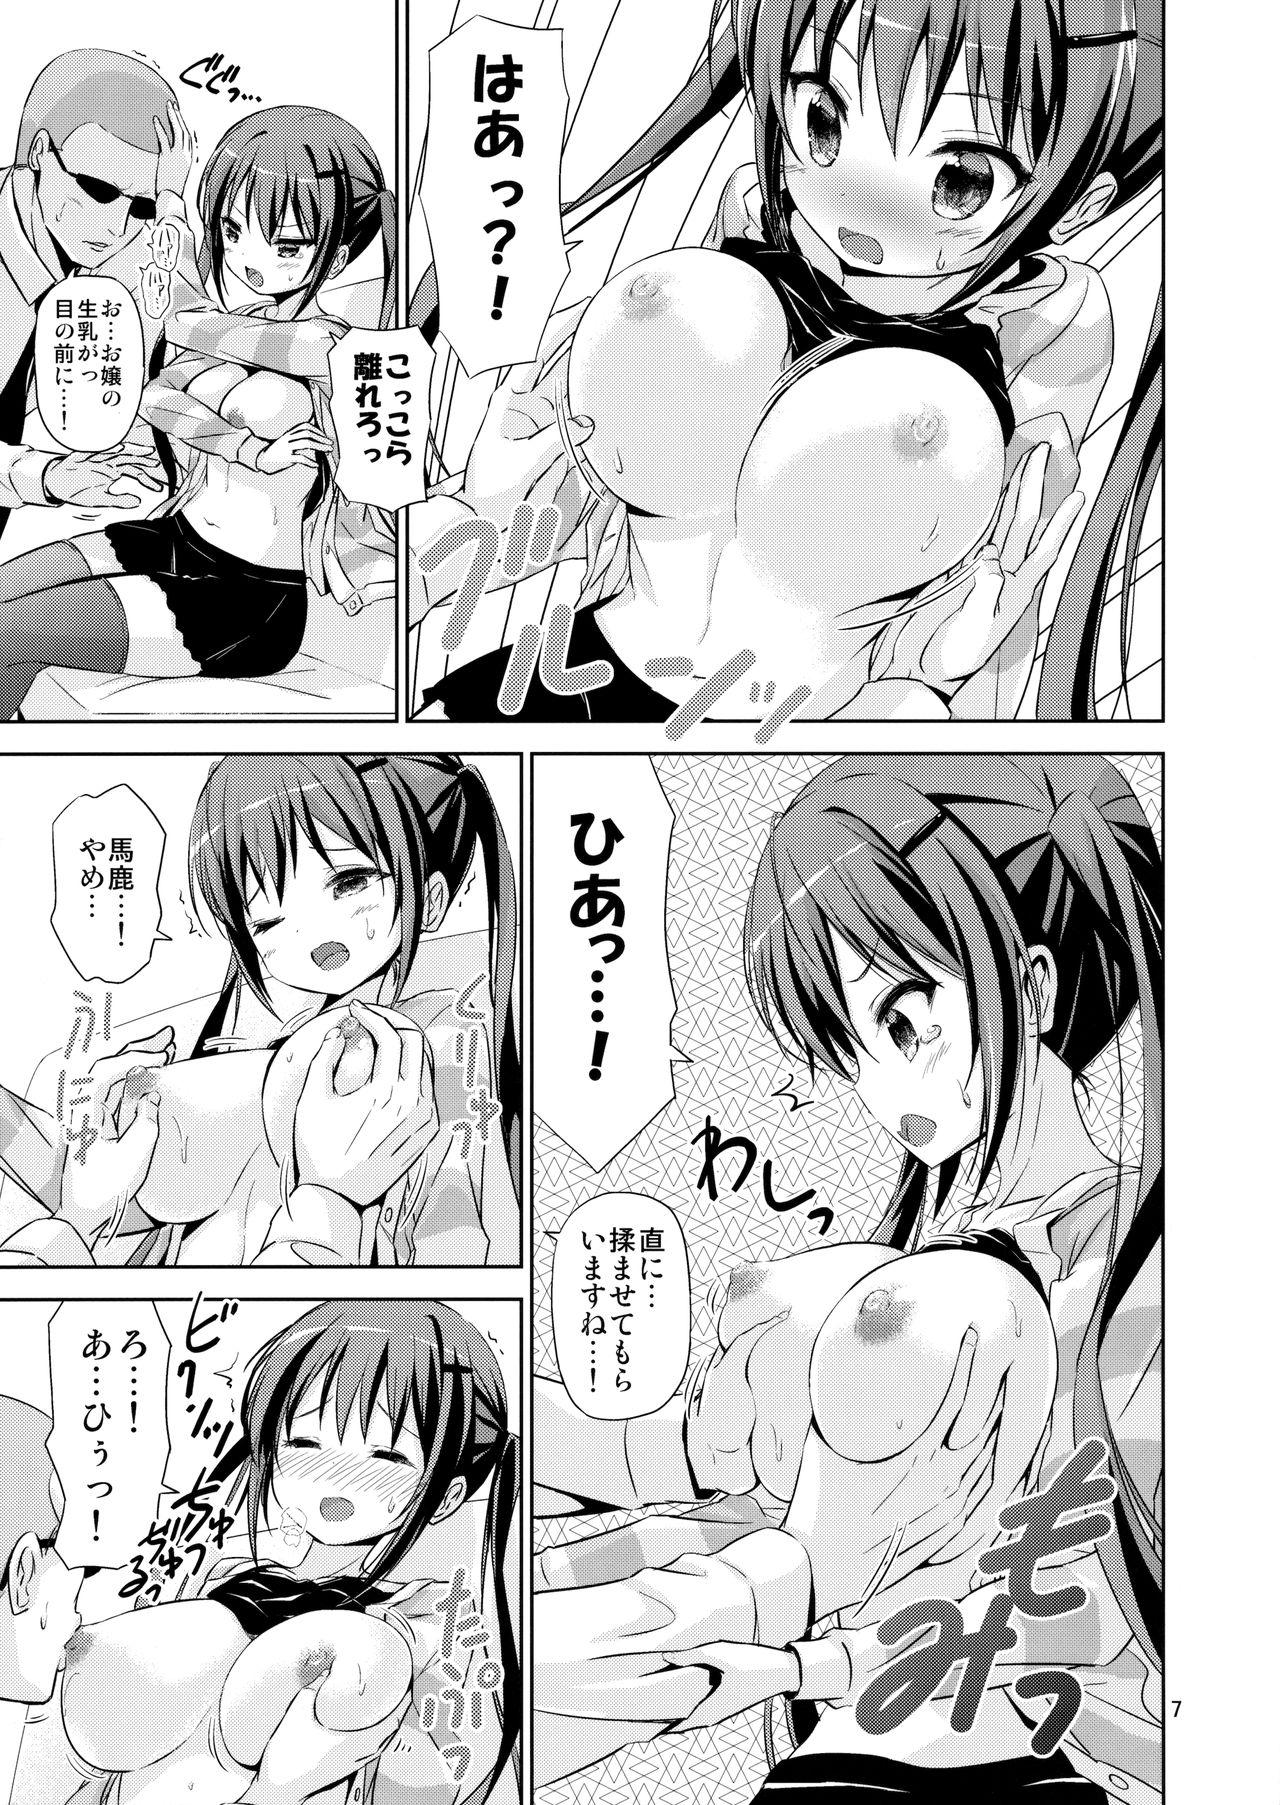 Interracial Sex GUDE - Gochuumon wa usagi desu ka Seduction Porn - Page 6